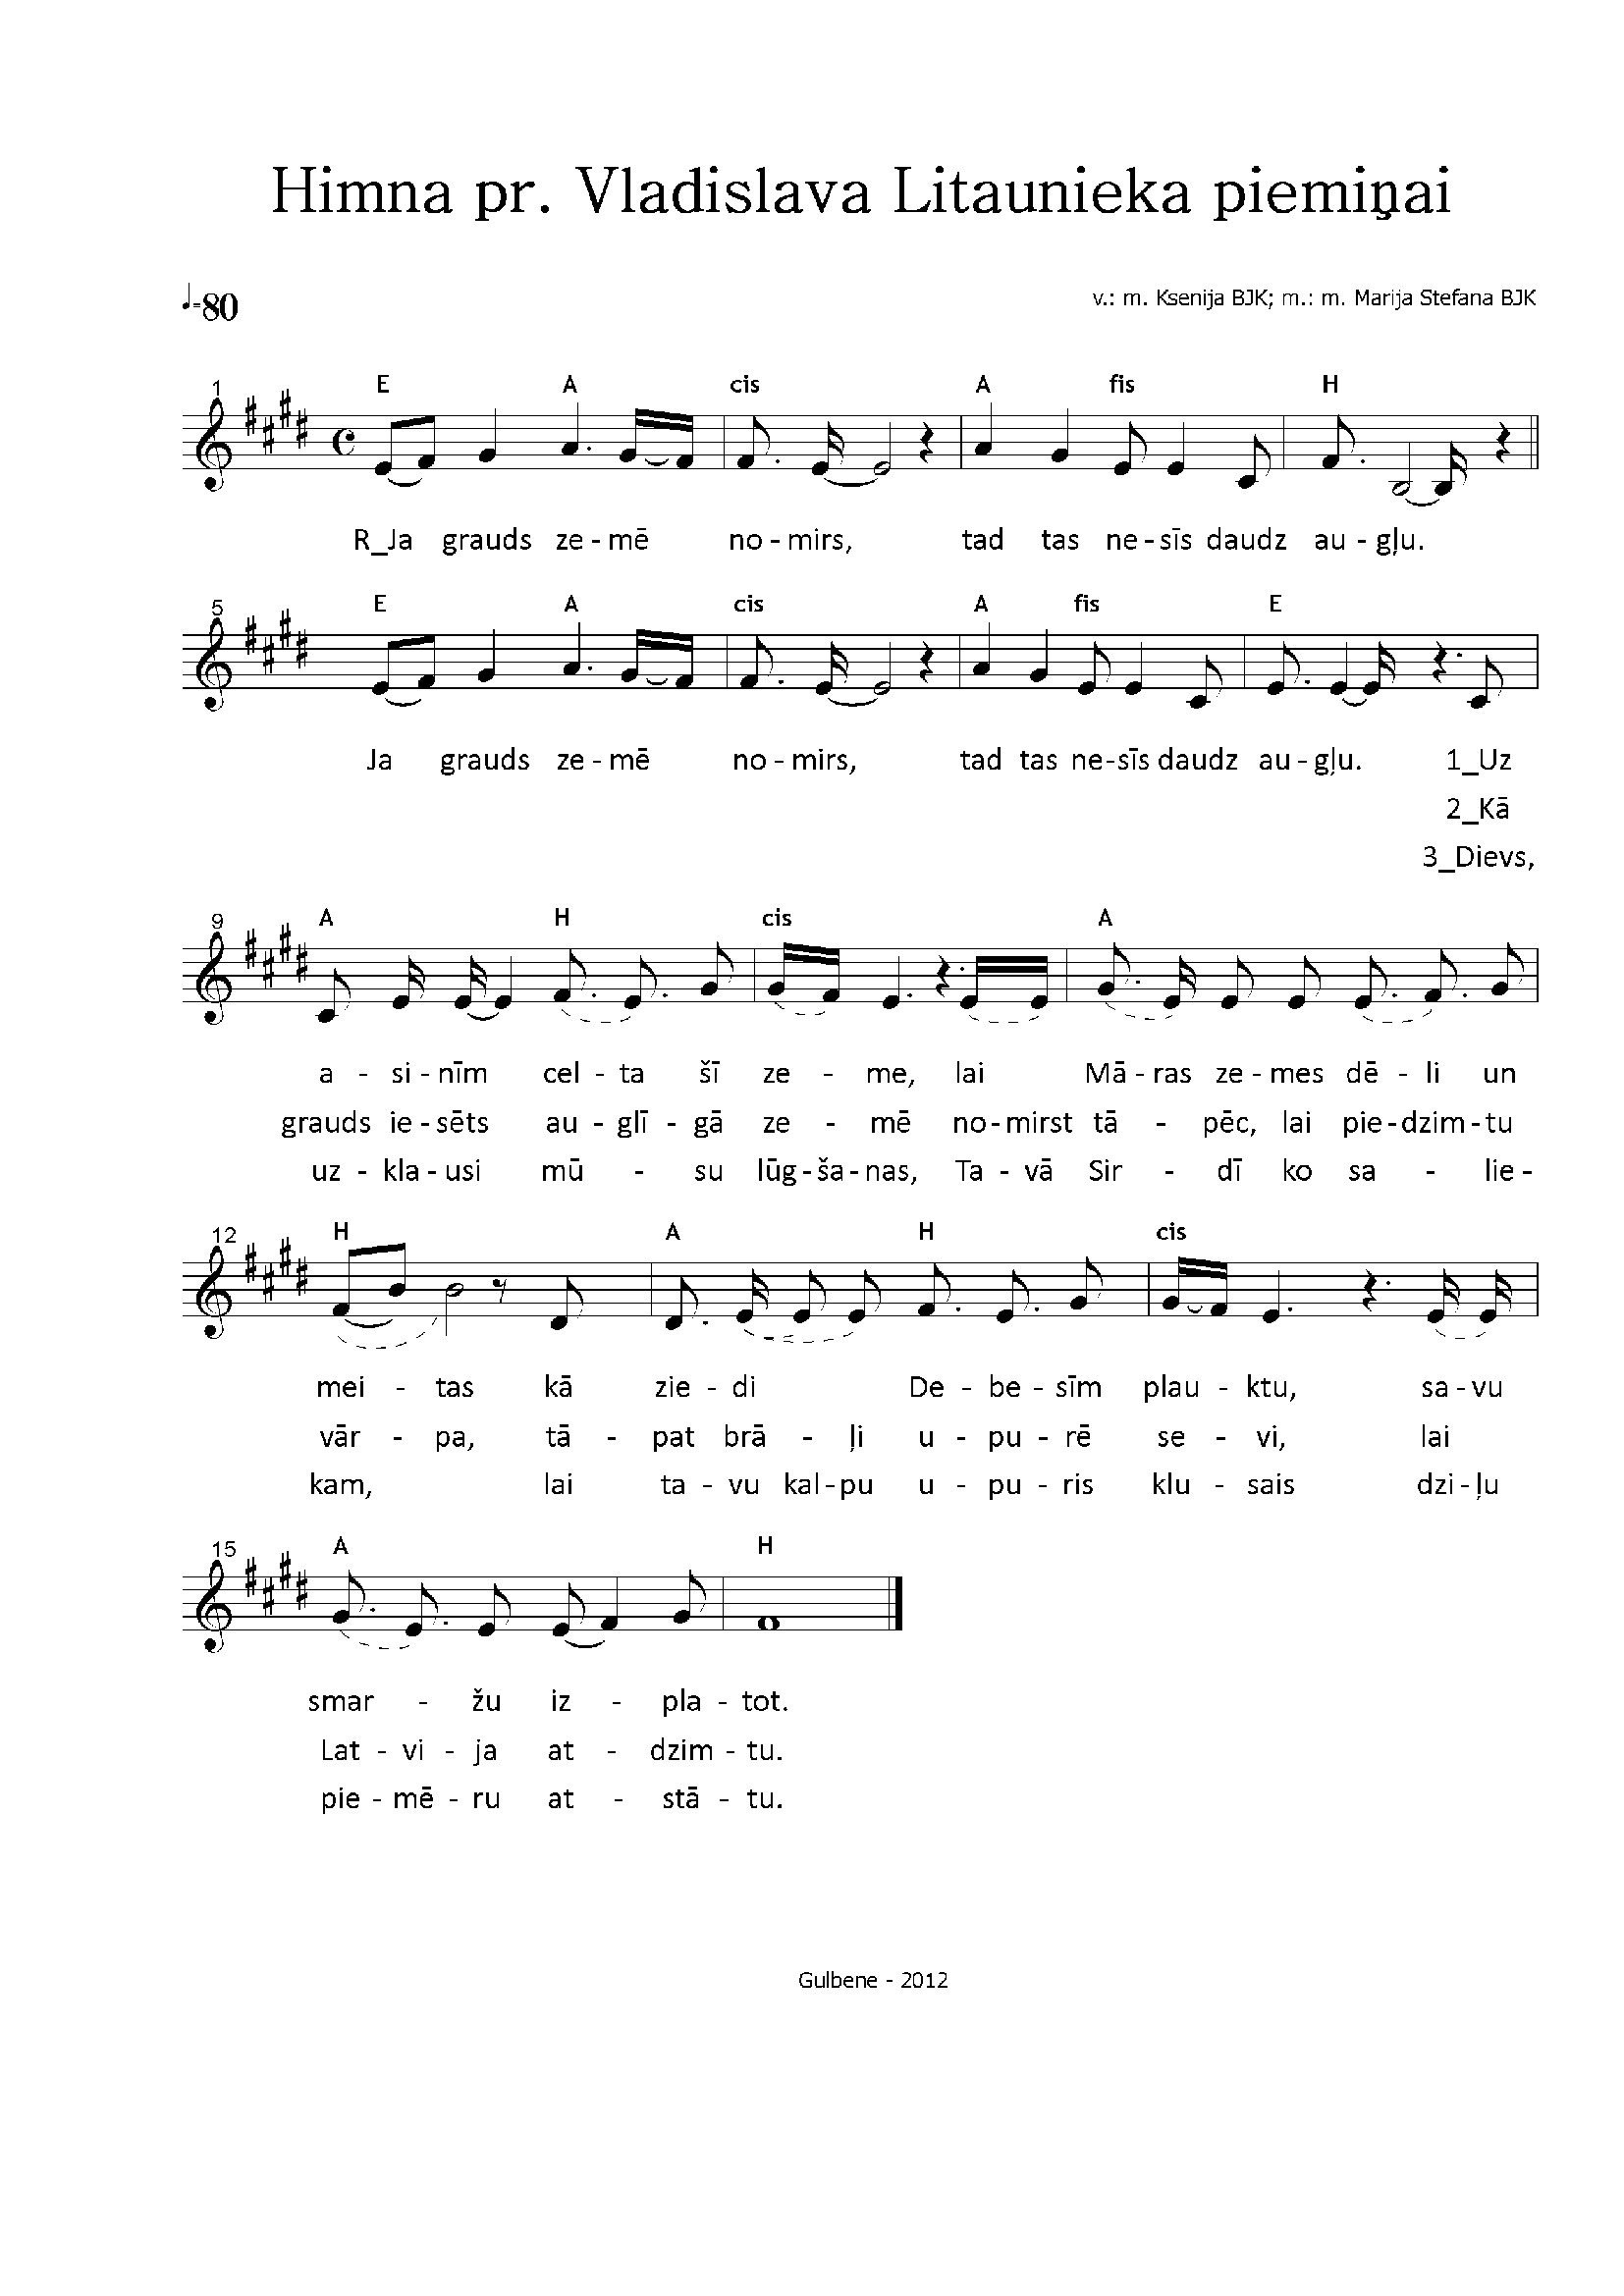 Himna priestera V. Litaunieka piemiņai